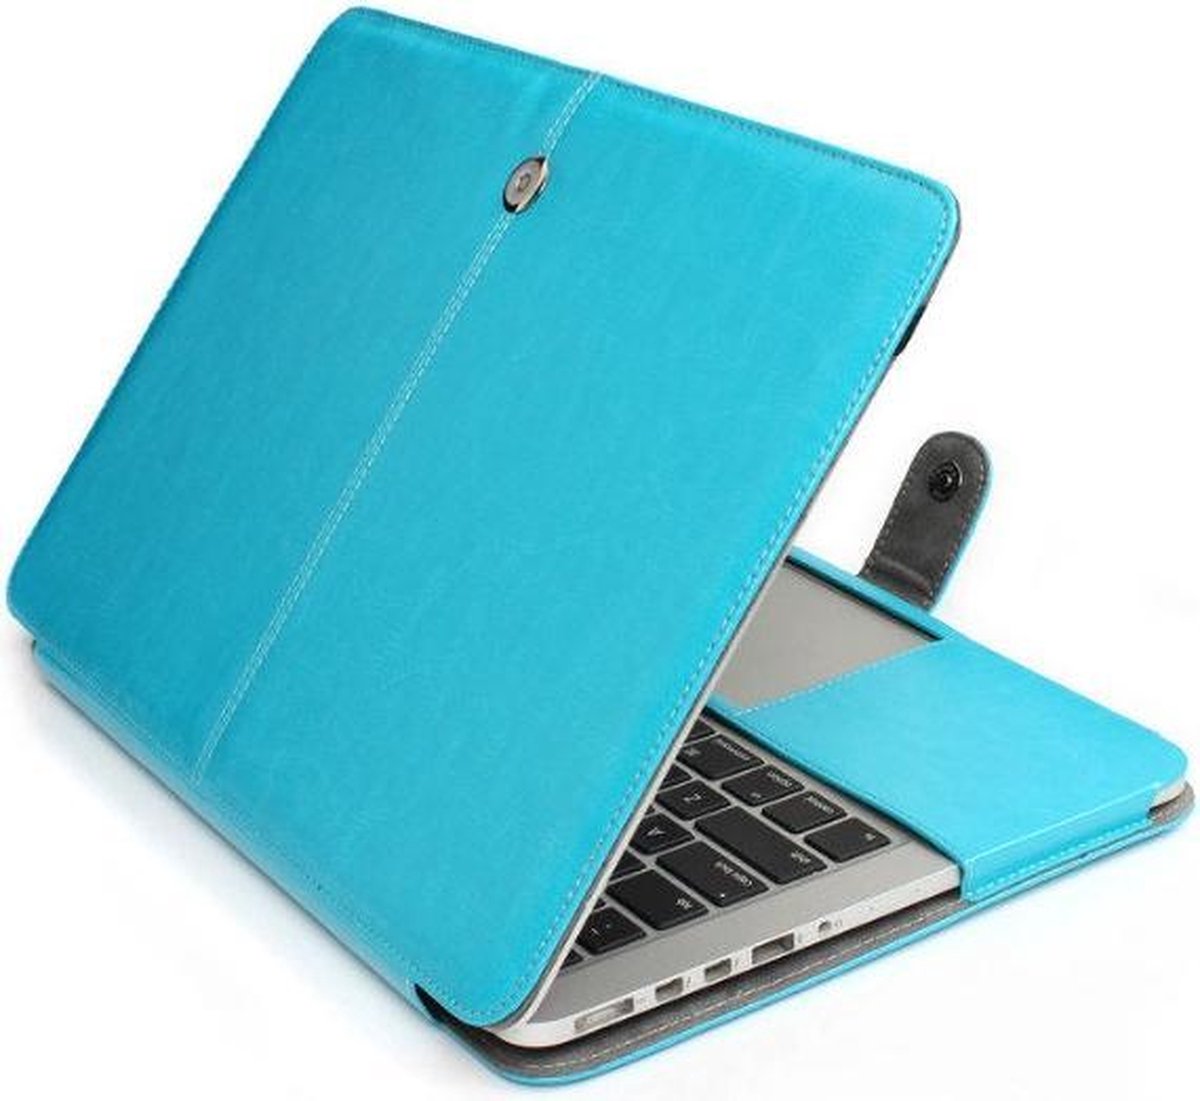 Soft Macbook Case MacBook Retina 13 inch 2014/2015 A1425 -A1502 - Turquoise